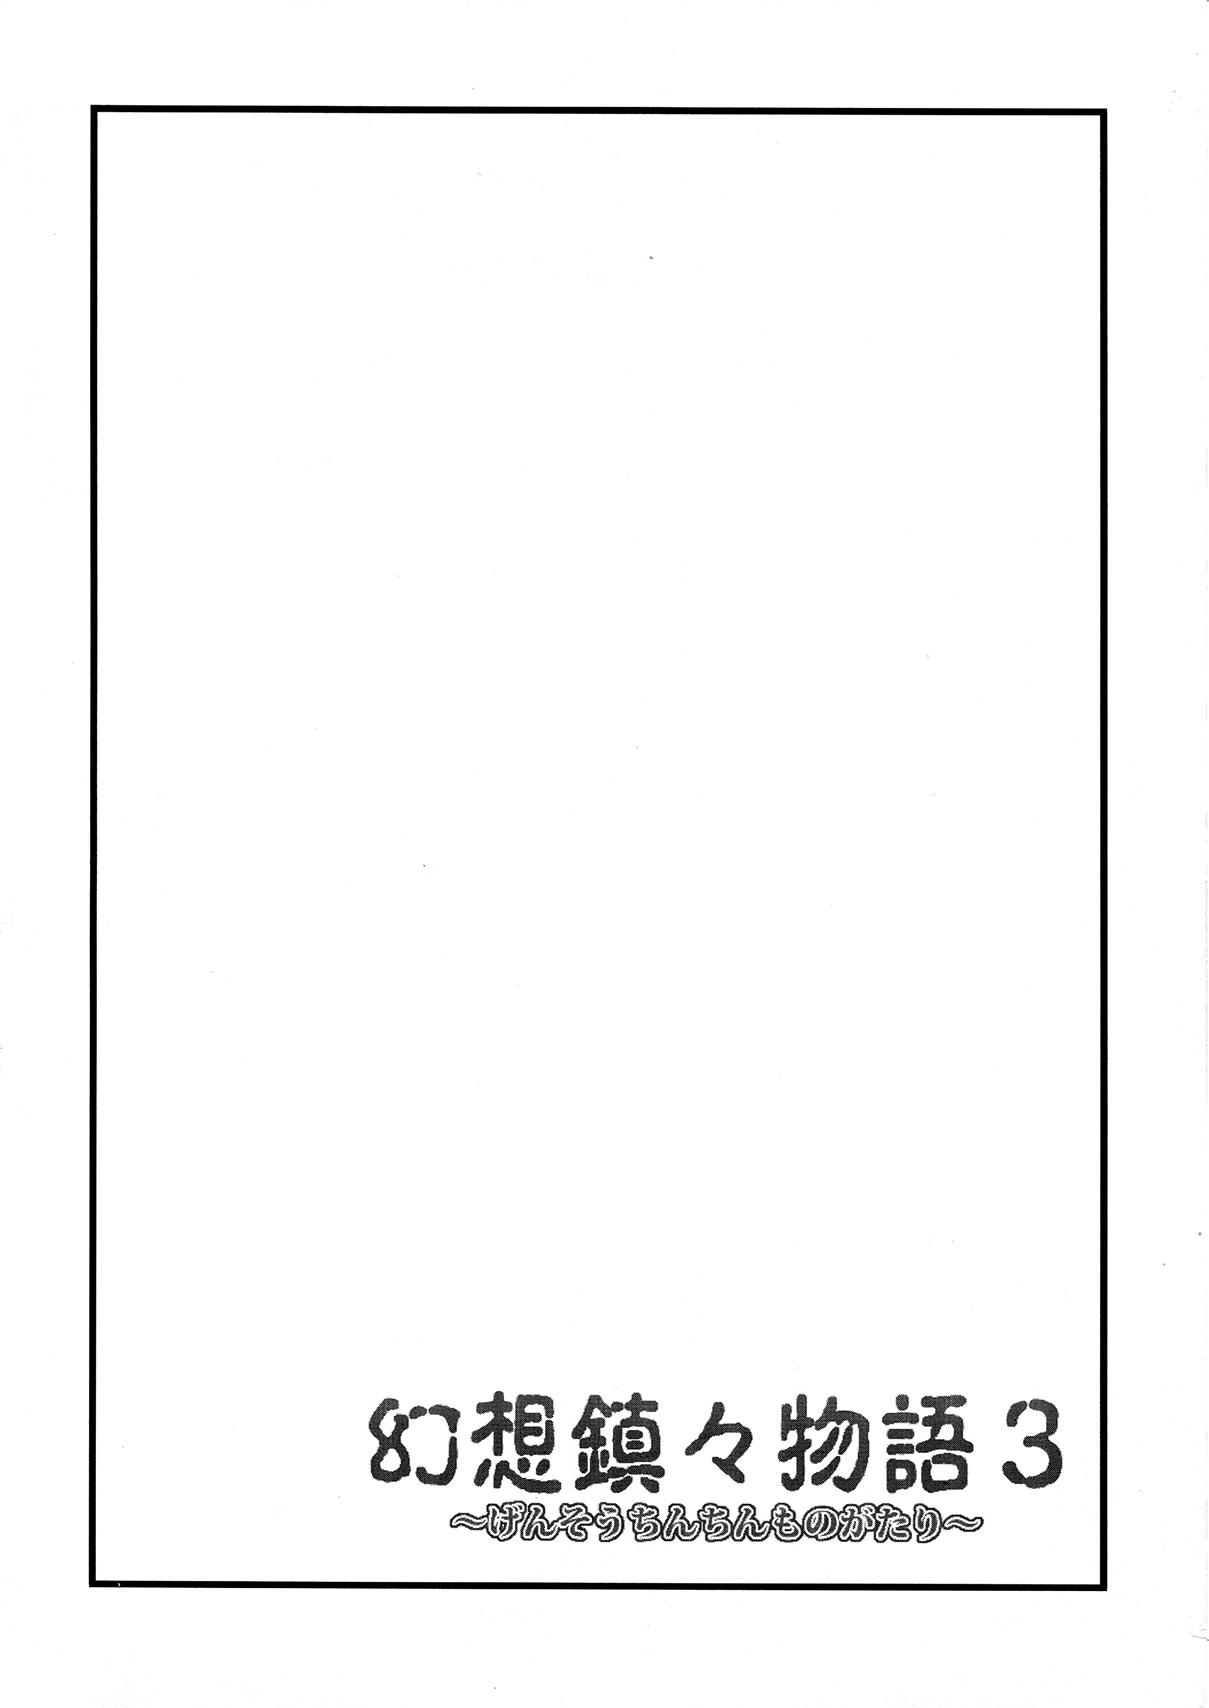 Chinese Gensou Chinchin Monogatari 3 - Touhou project Boob - Page 3